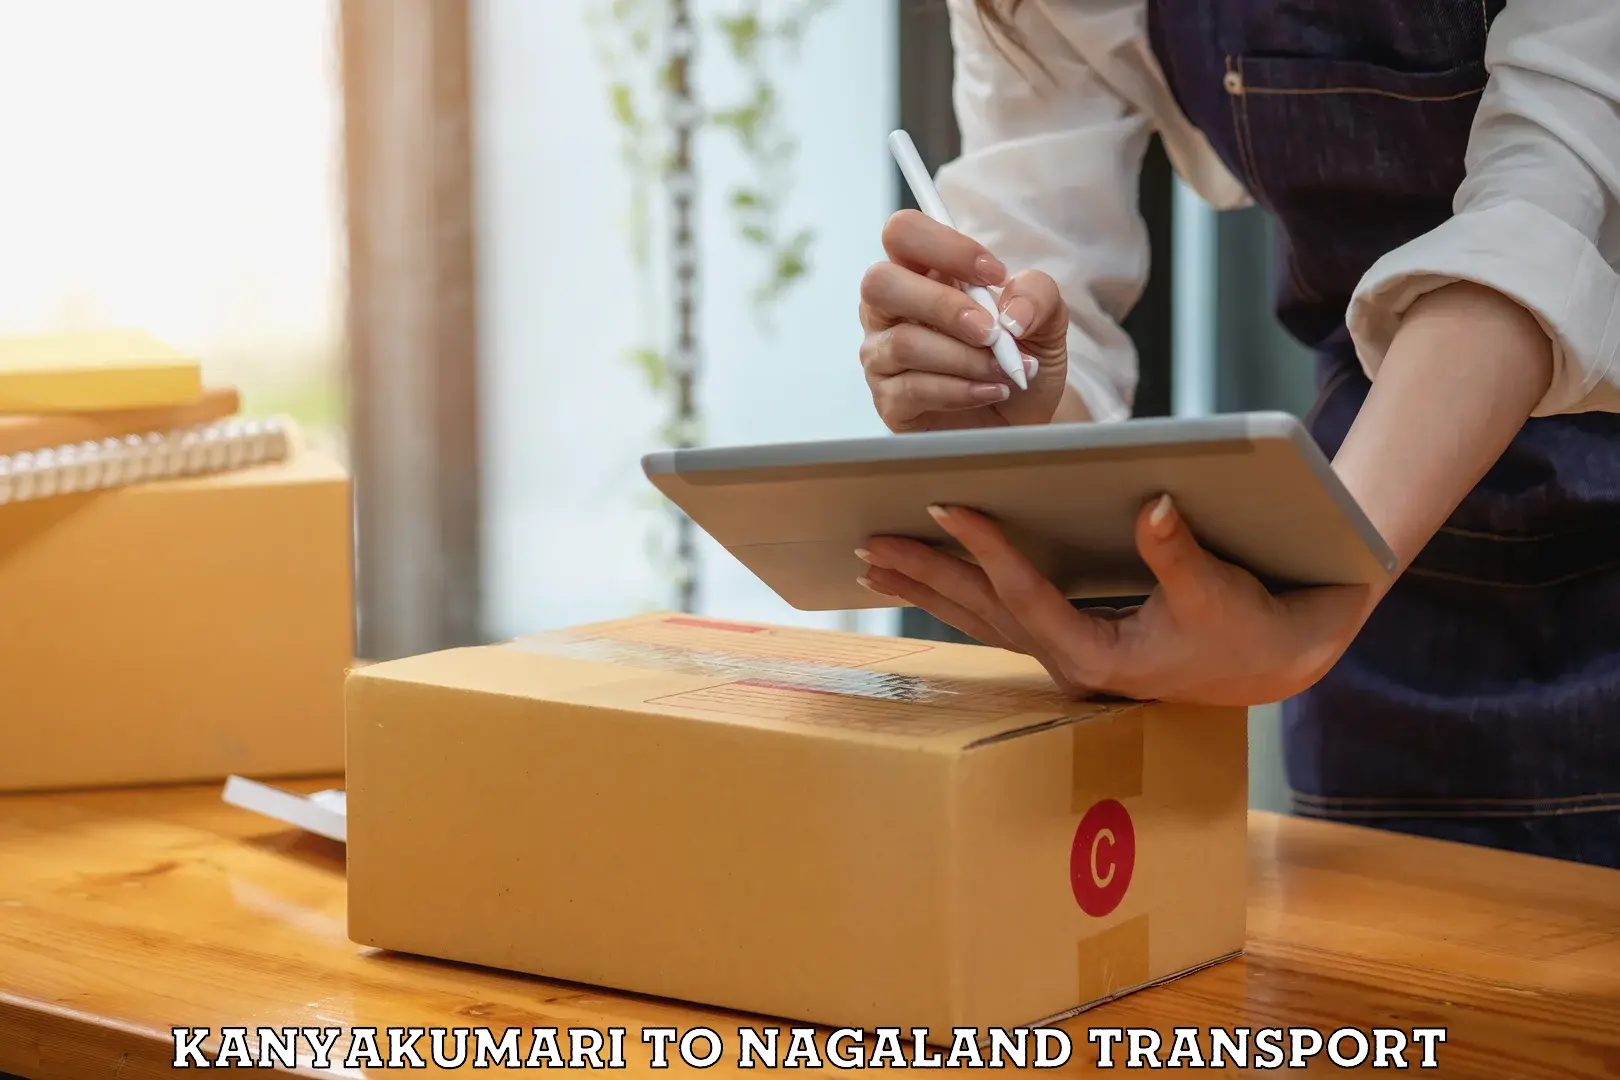 Container transport service Kanyakumari to NIT Nagaland